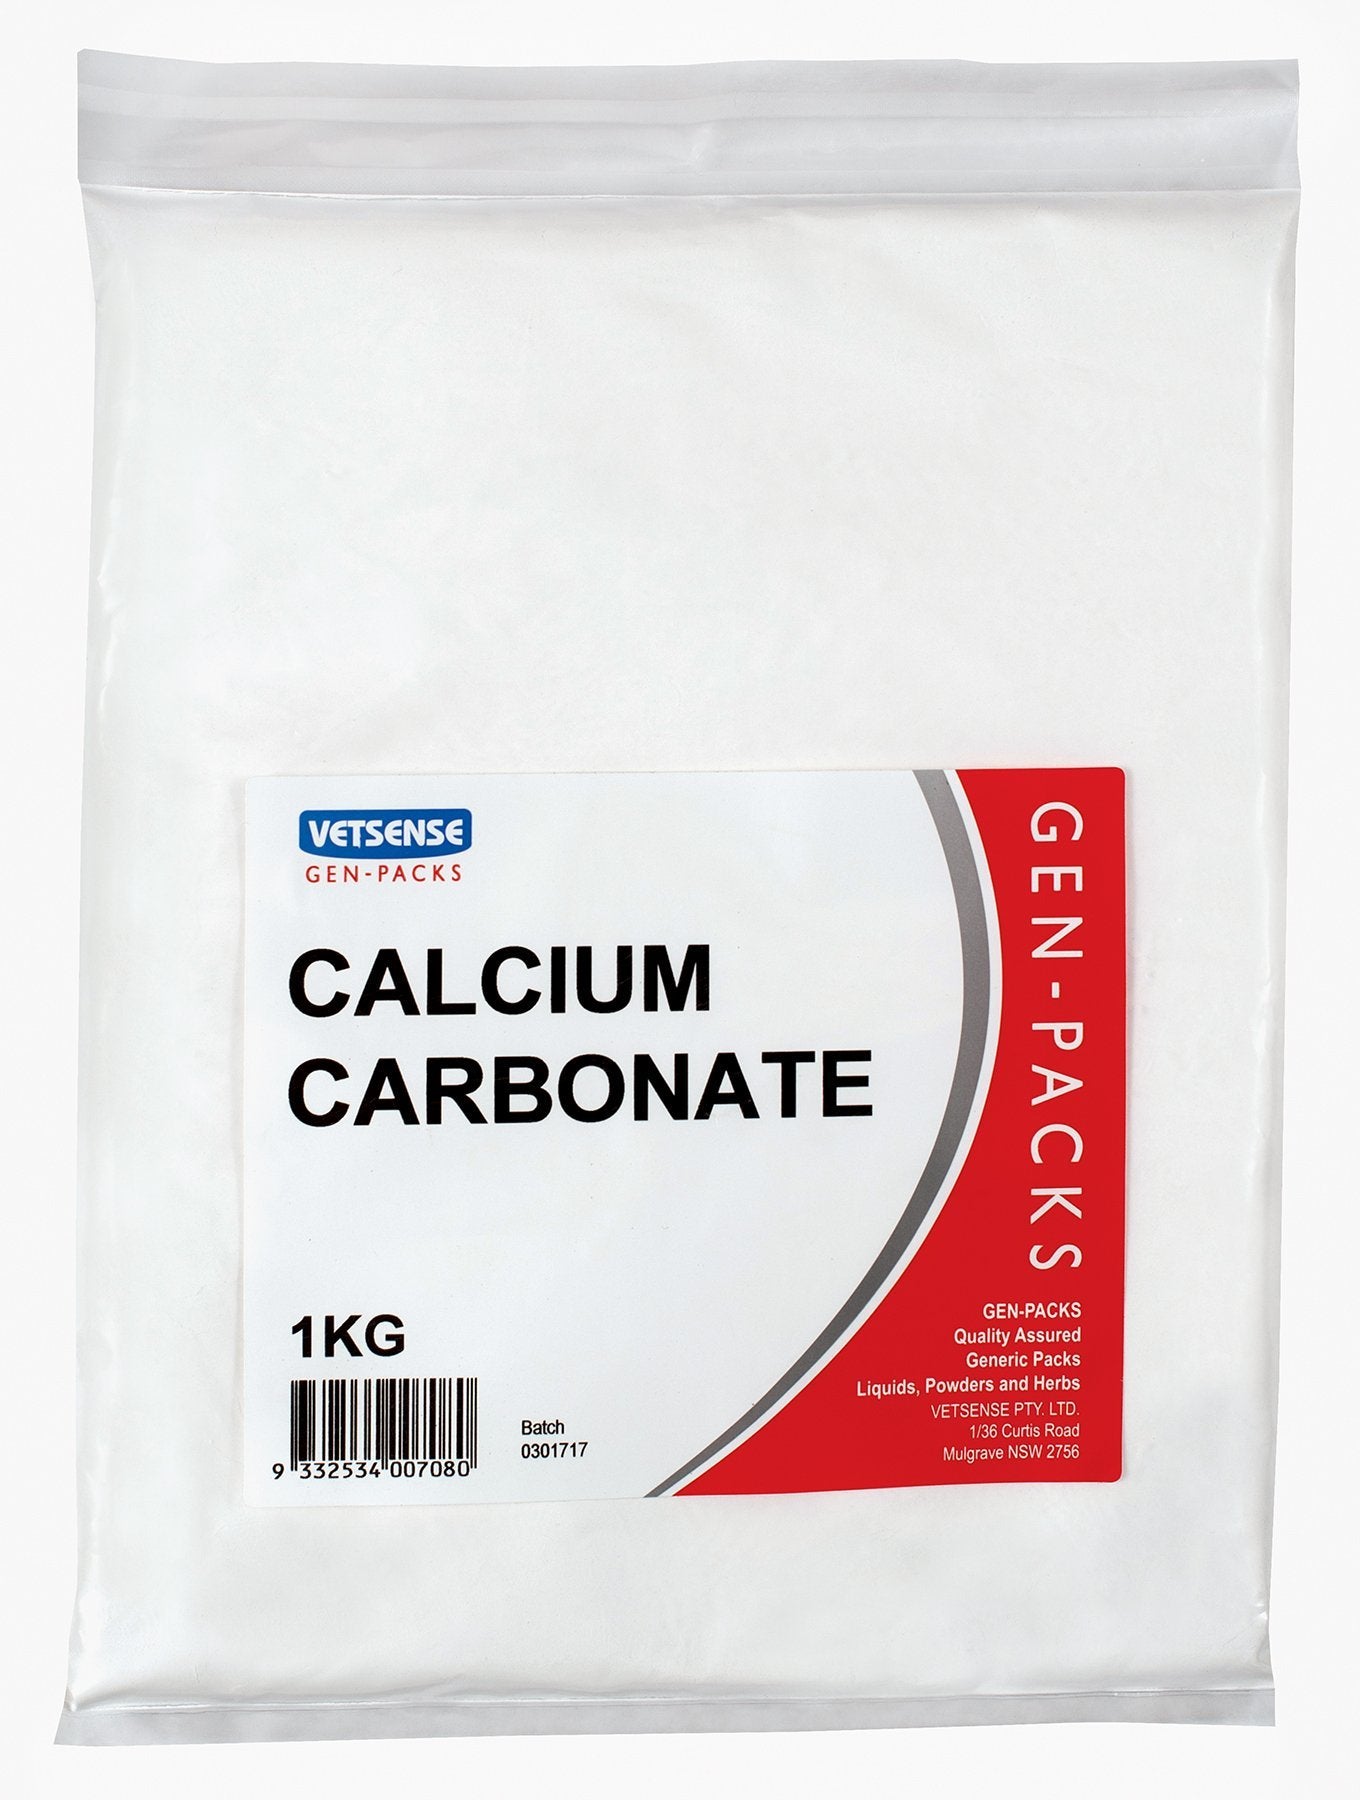 Vetsense Gen Packs Calcium Carbonate - Woonona Petfood & Produce